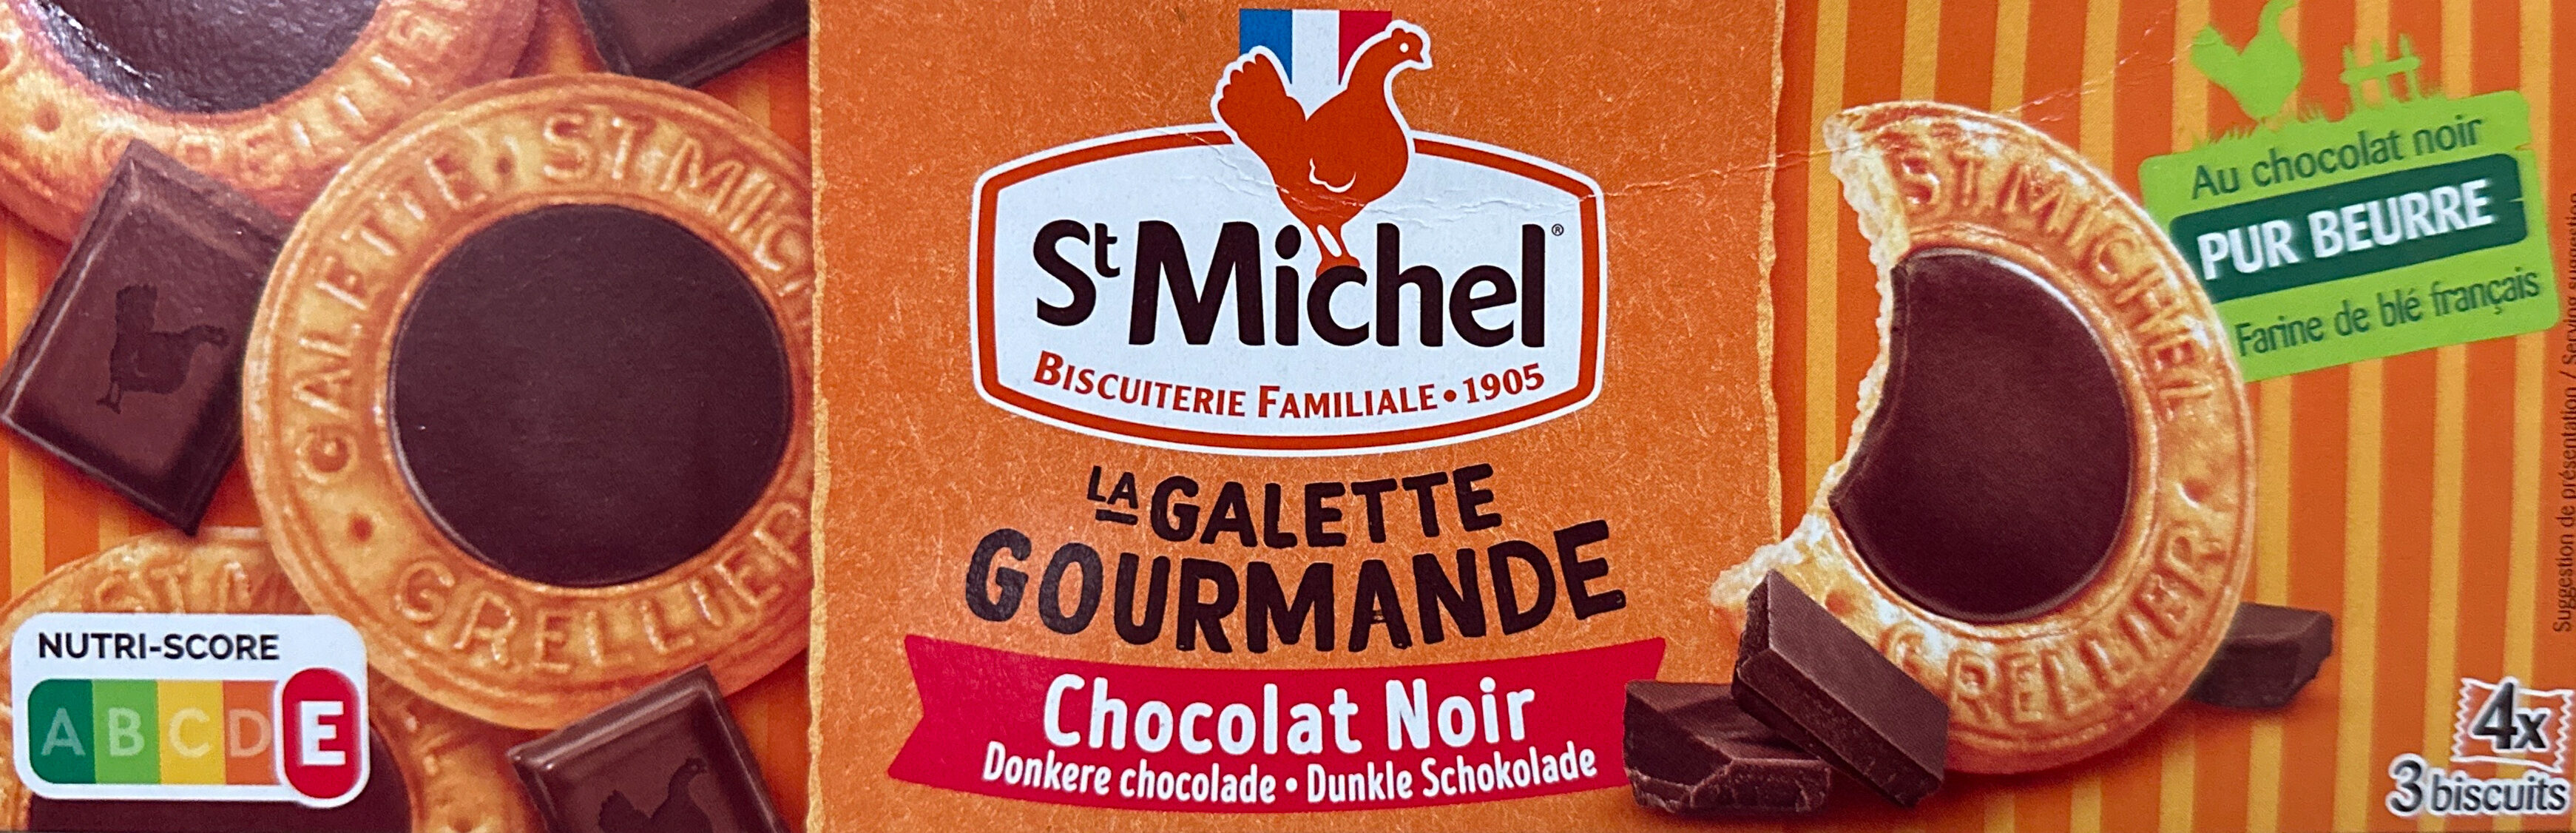 La Galette gourmande chocolat noir - Produit